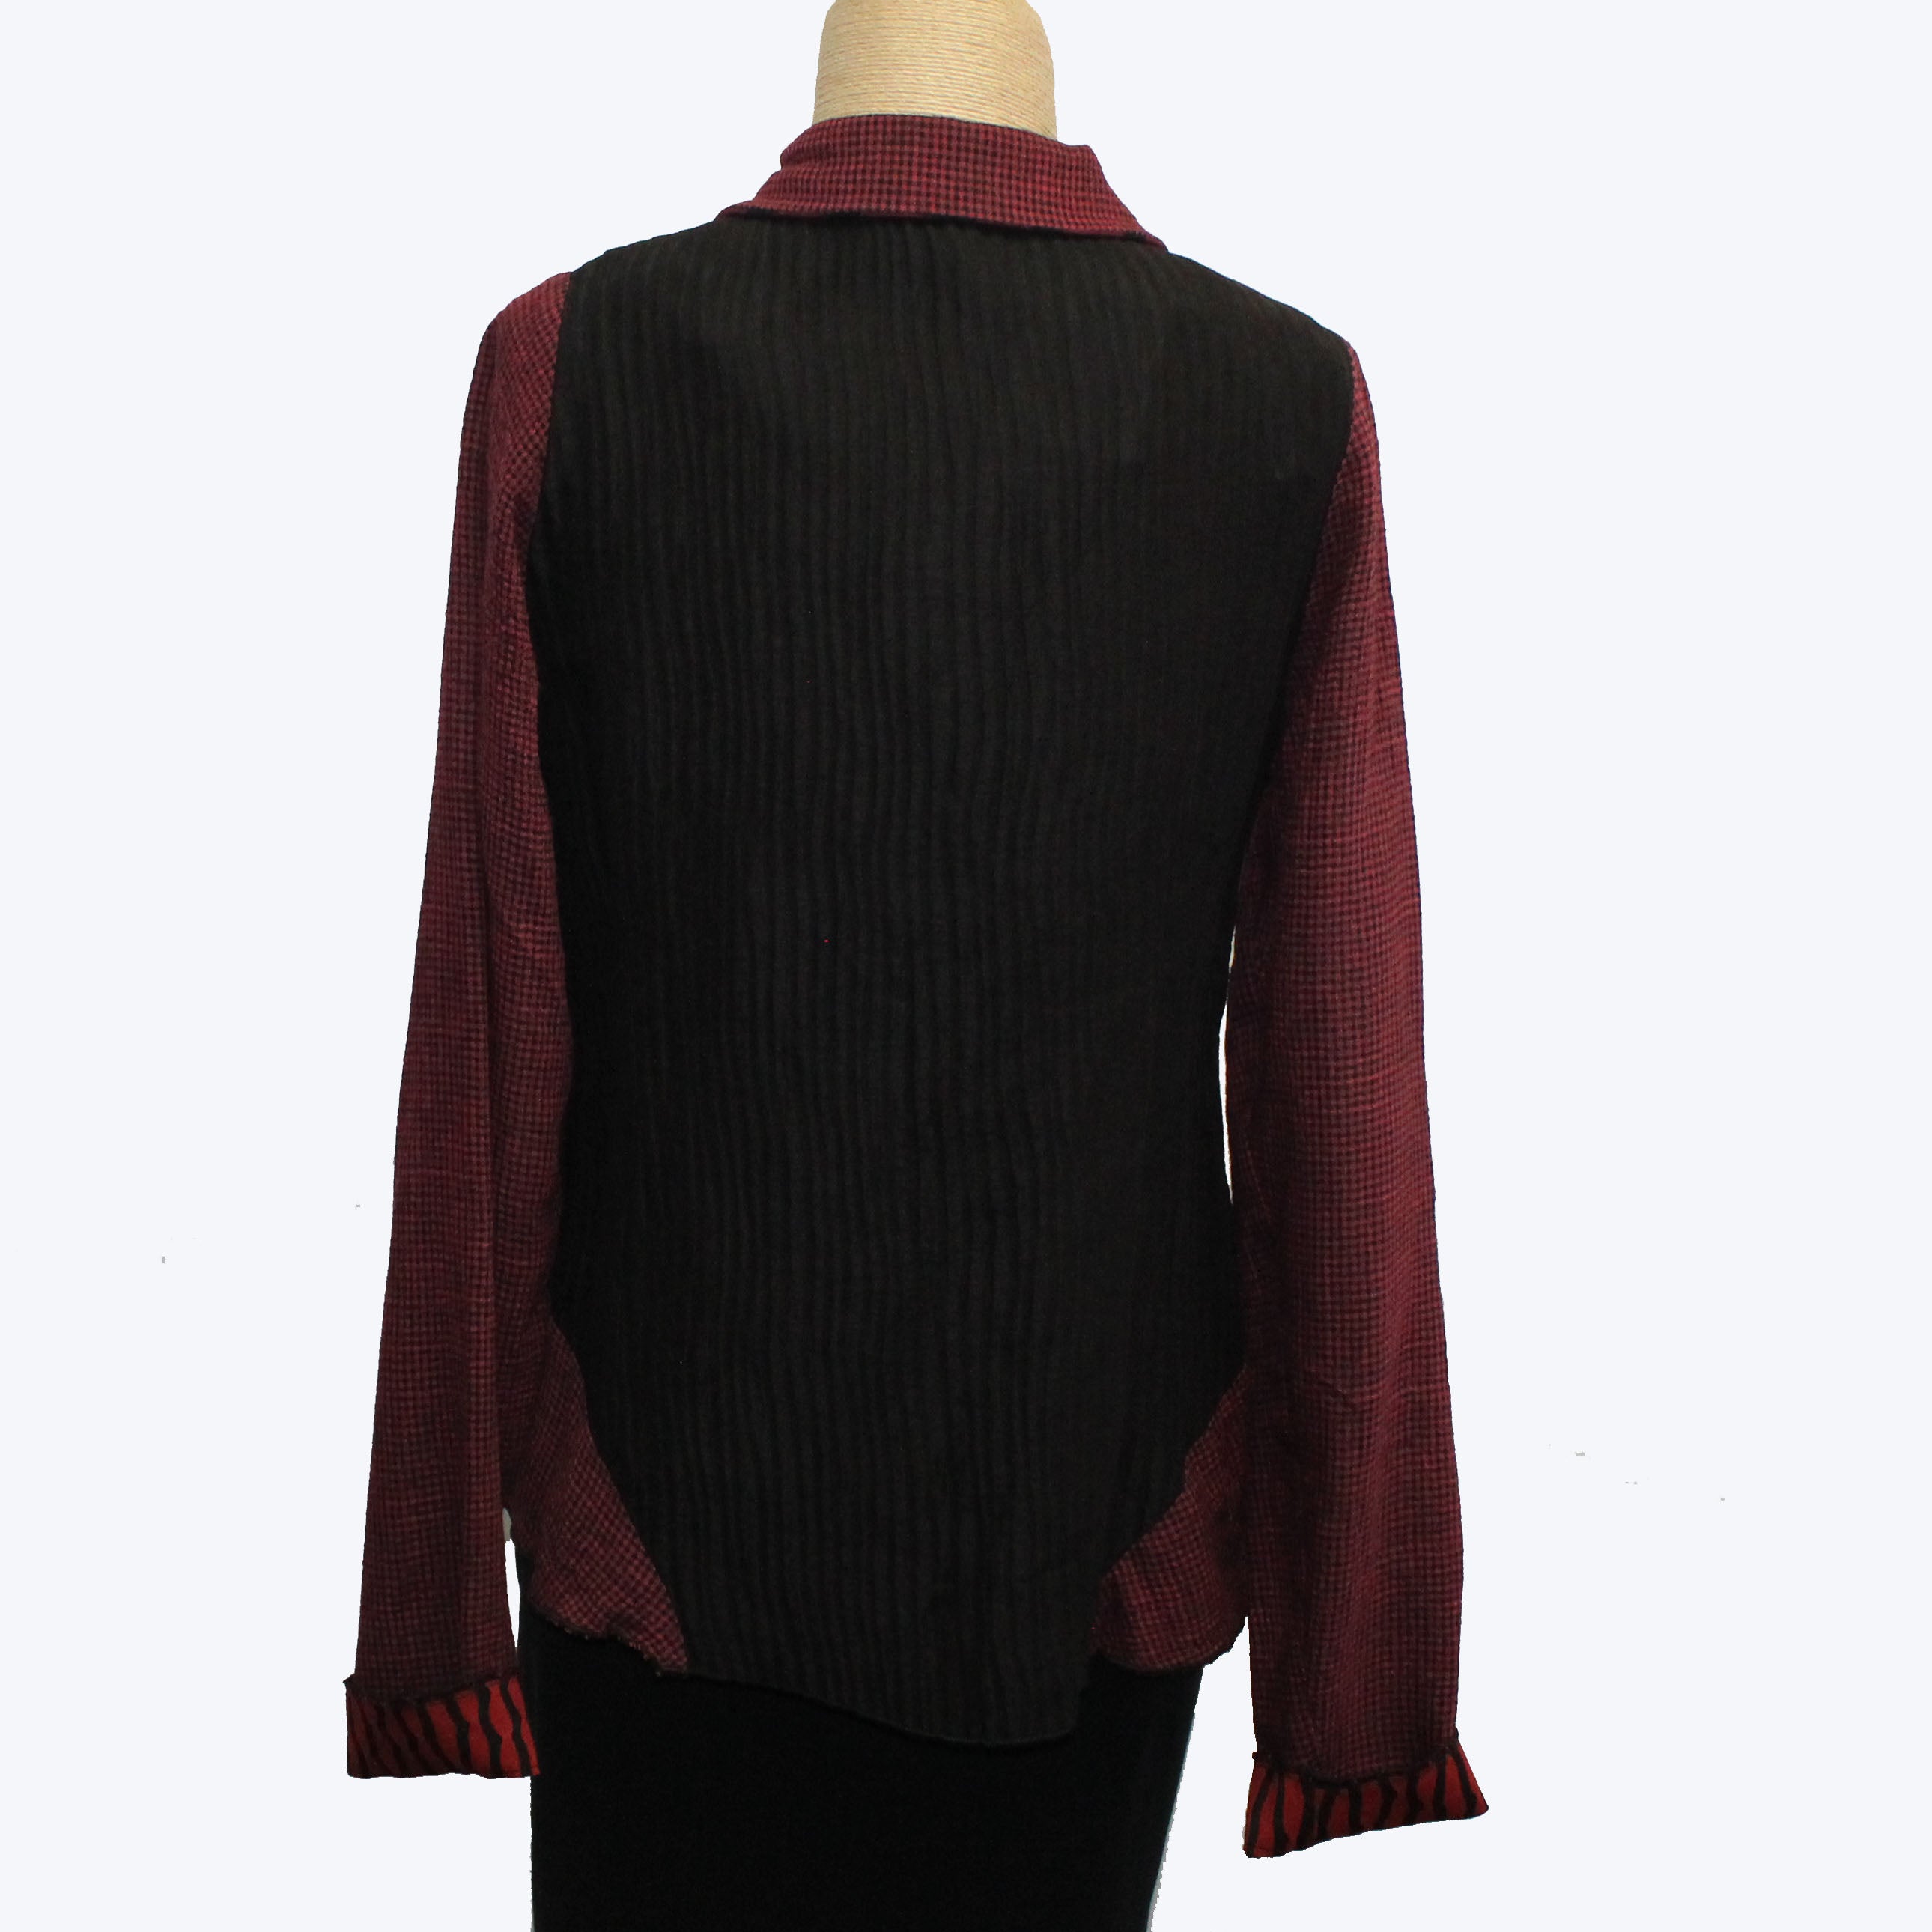 Deborah Cross Shirt, Curve, Cranberry/Black, XXS